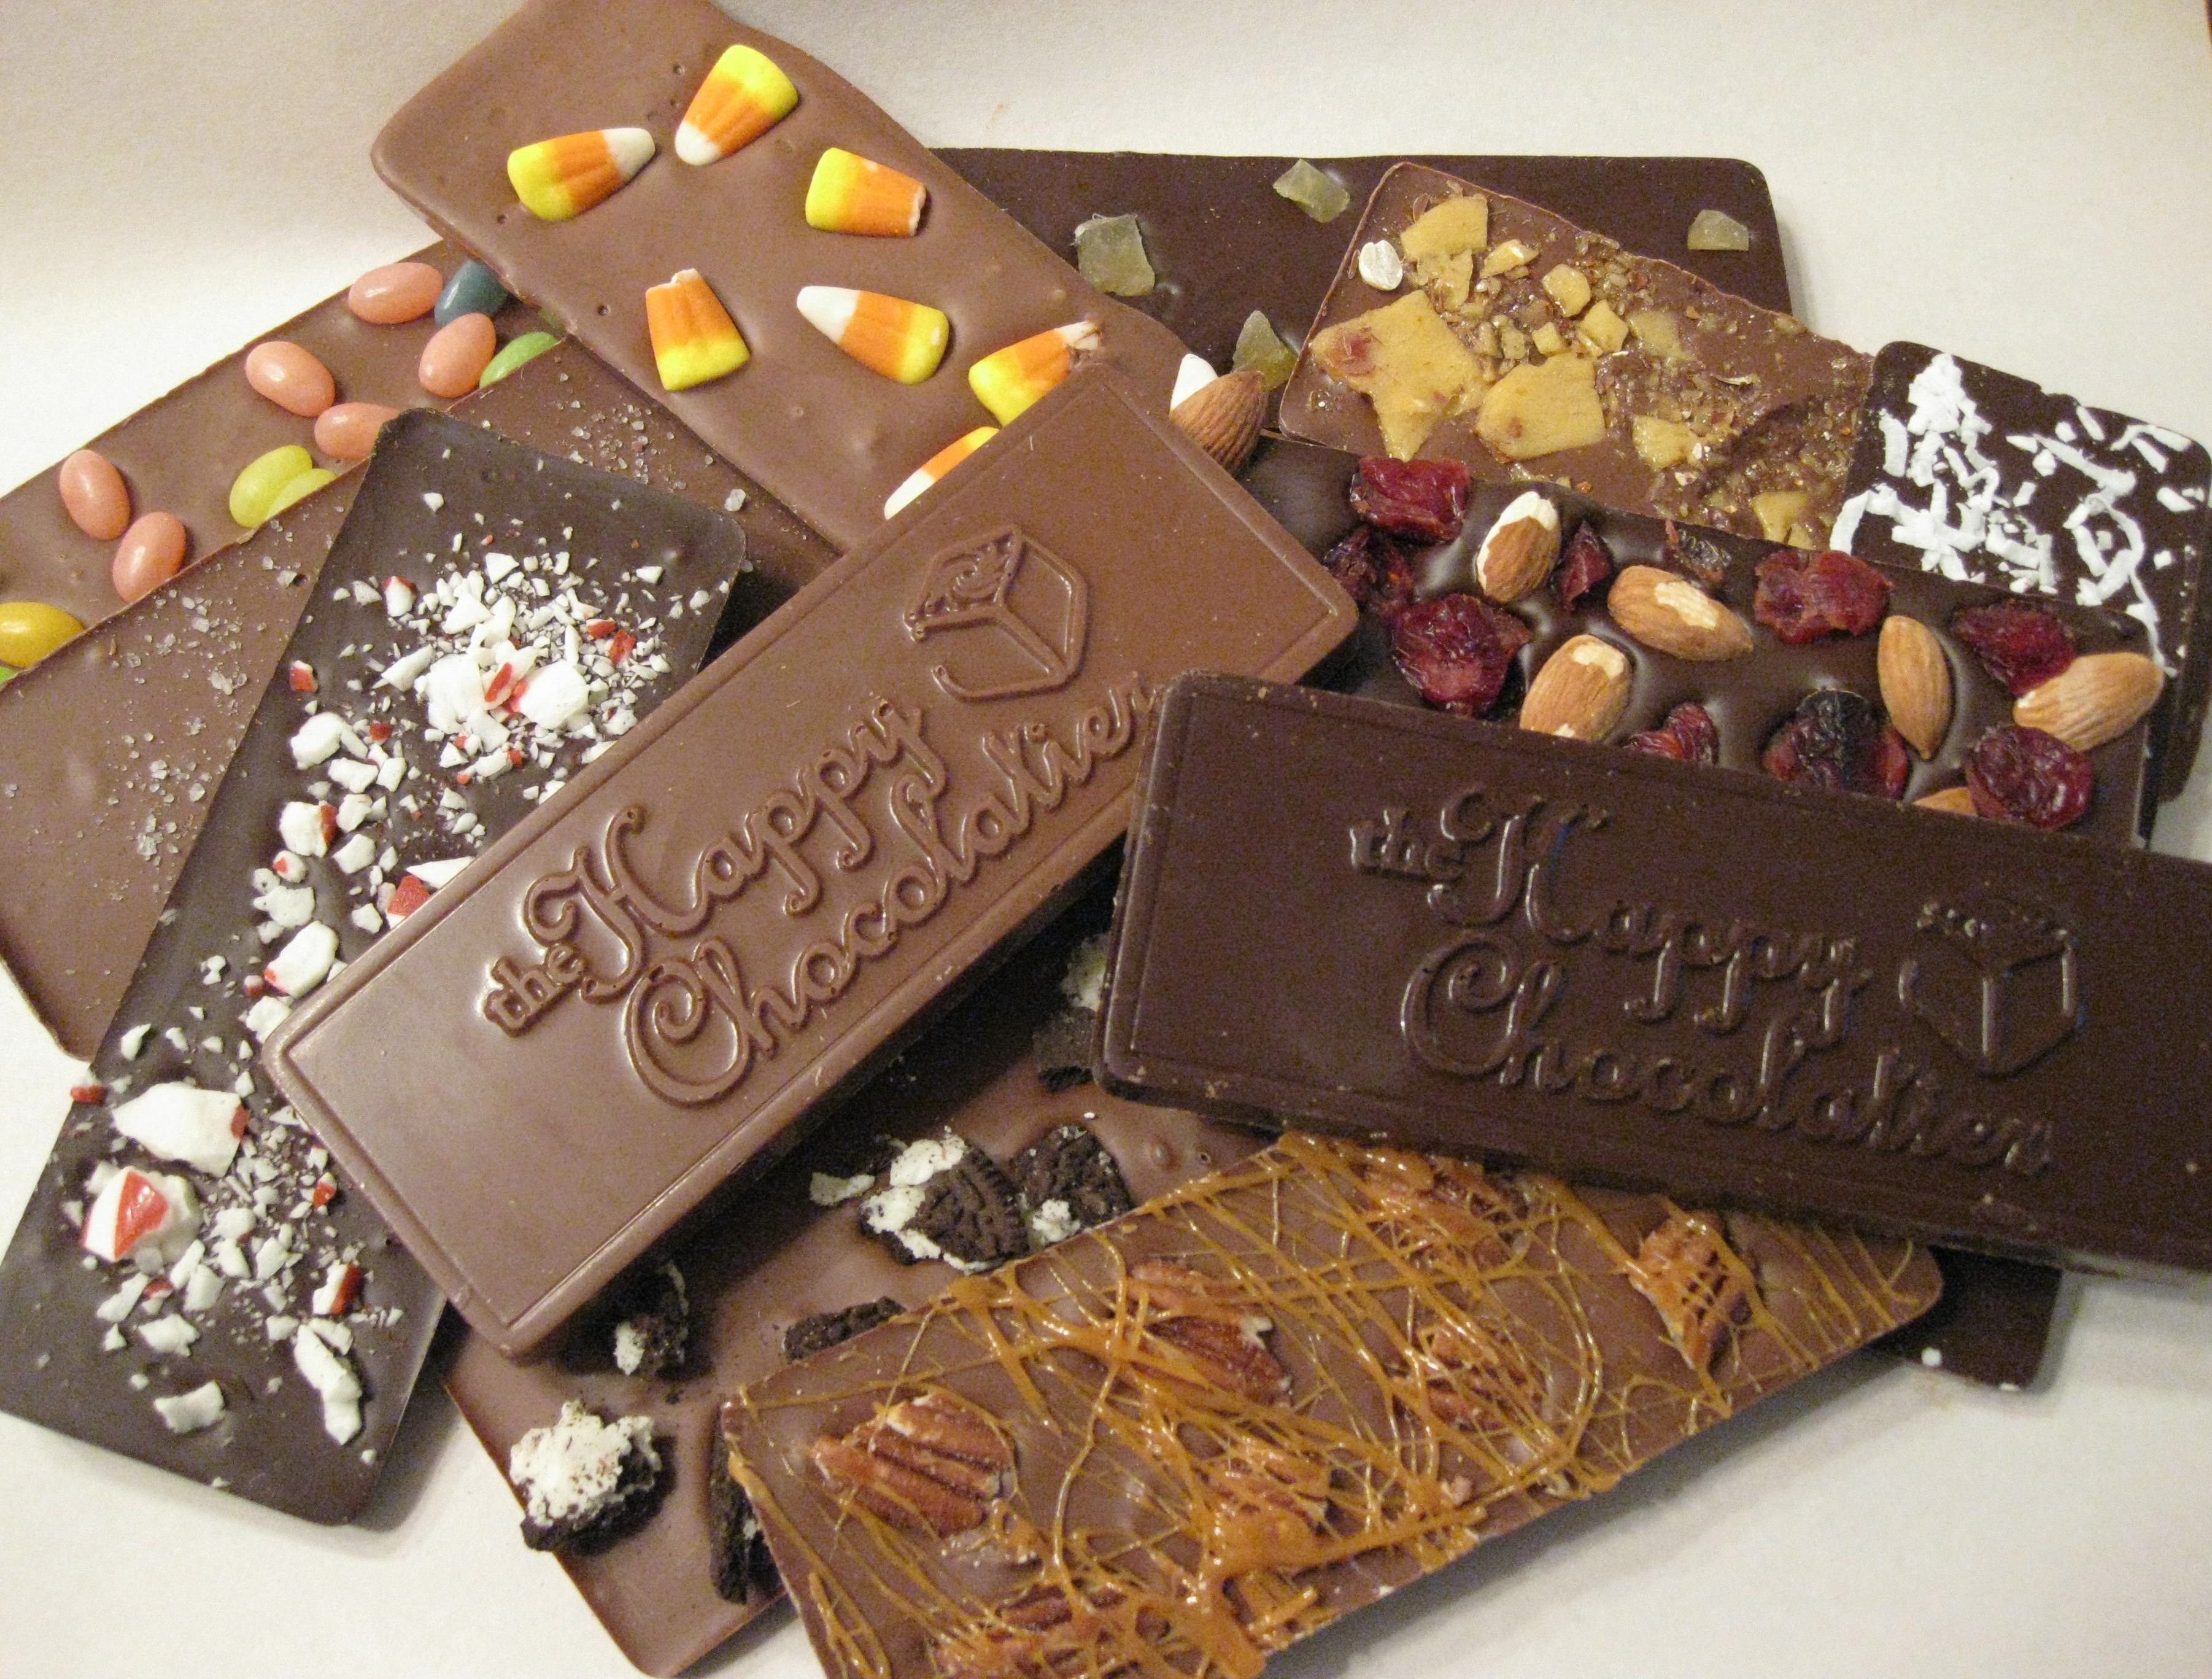 Шоколад купить барнаул. Бельгийский шоколад плитка. Шоколадная плитка Derby. Derby шоколад плитка. Необычный шоколад.